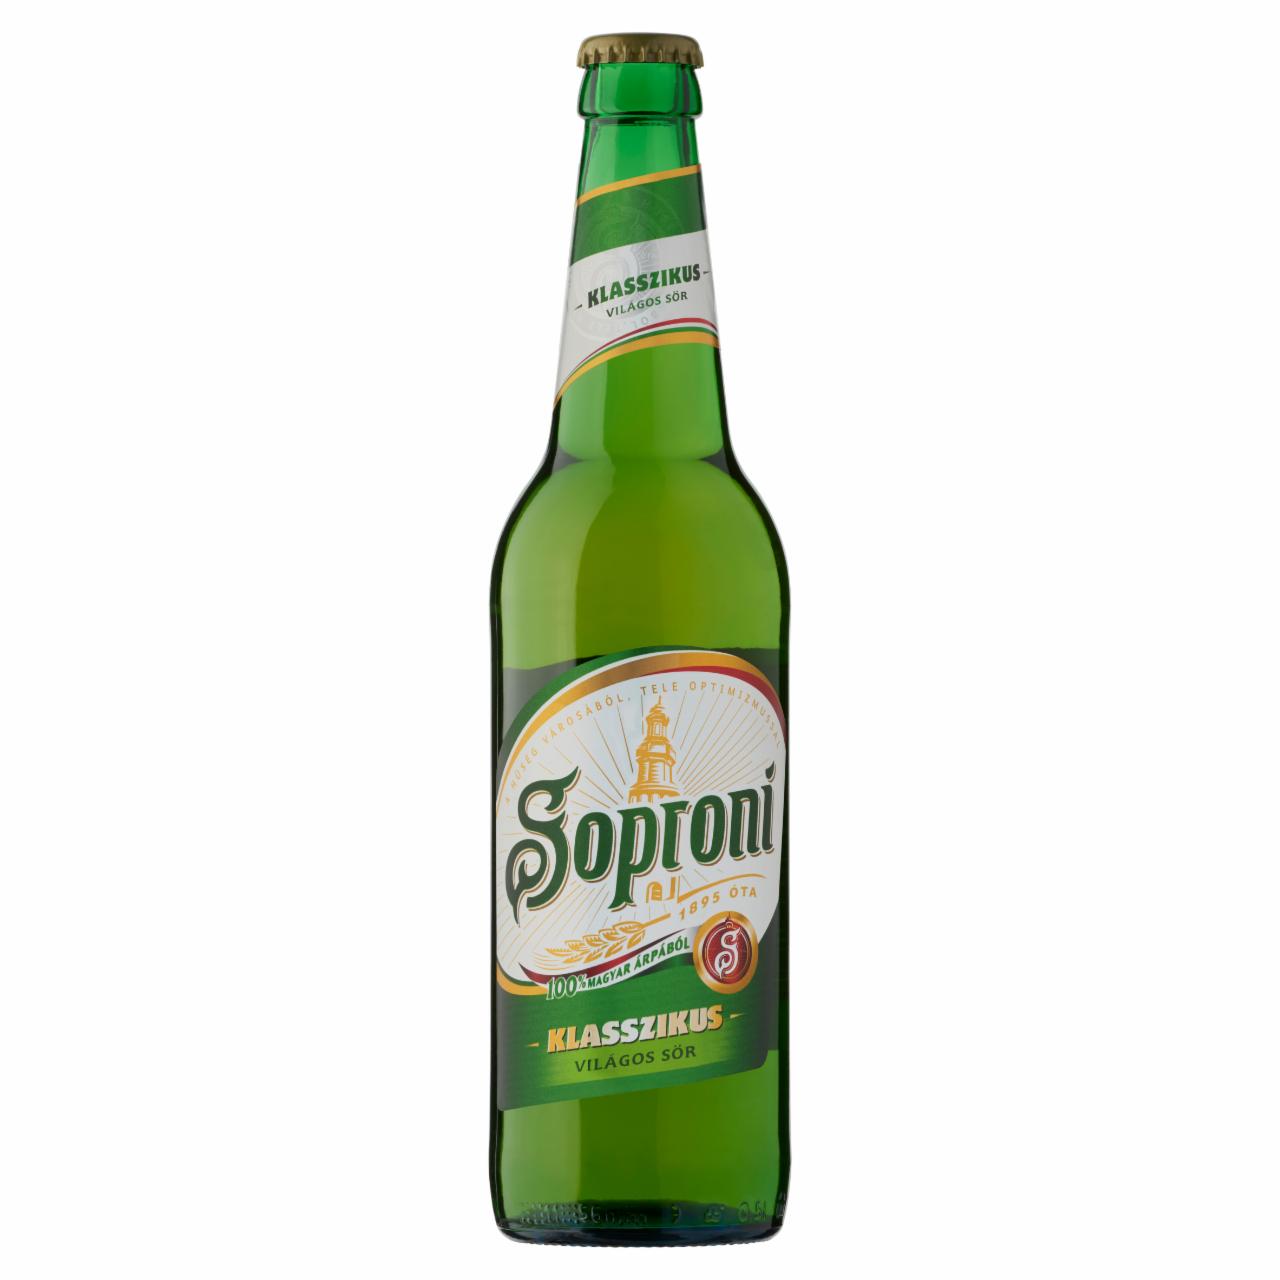 Képek - Soproni Klasszikus világos sör 4,5% 0,5 l üveg